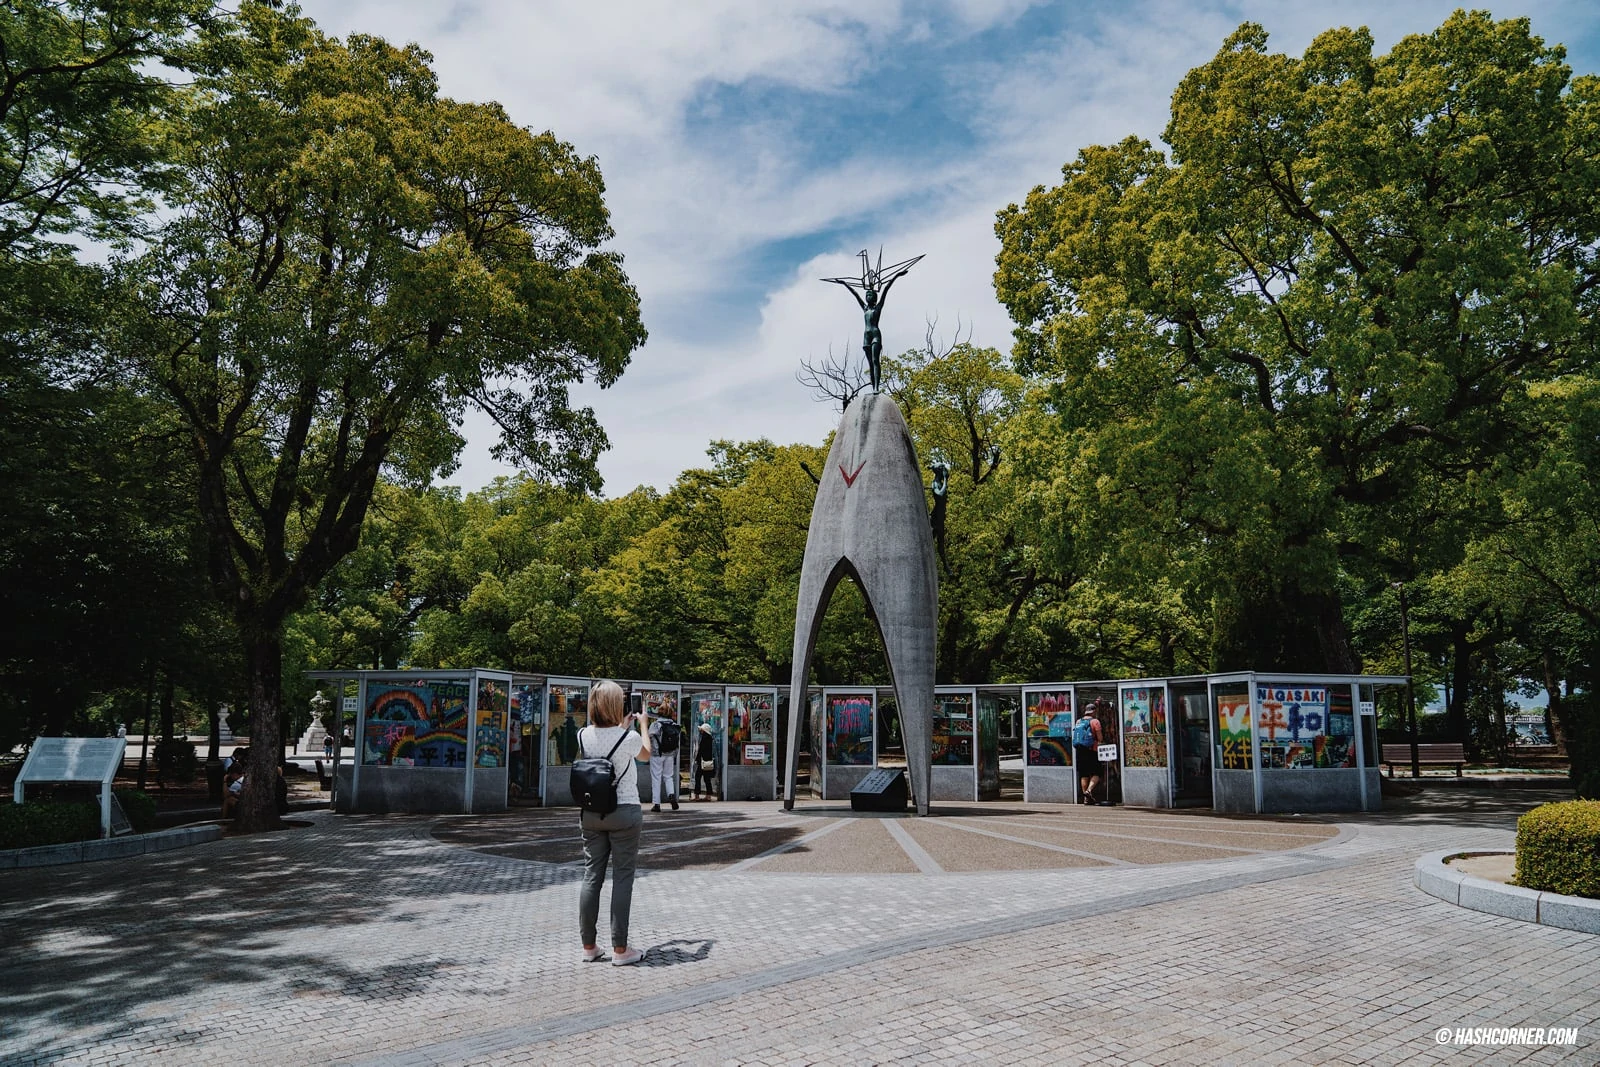 รีวิว ฮิโรชิม่า (Hiroshima) เที่ยวญี่ปุ่น เมืองสันติภาพ